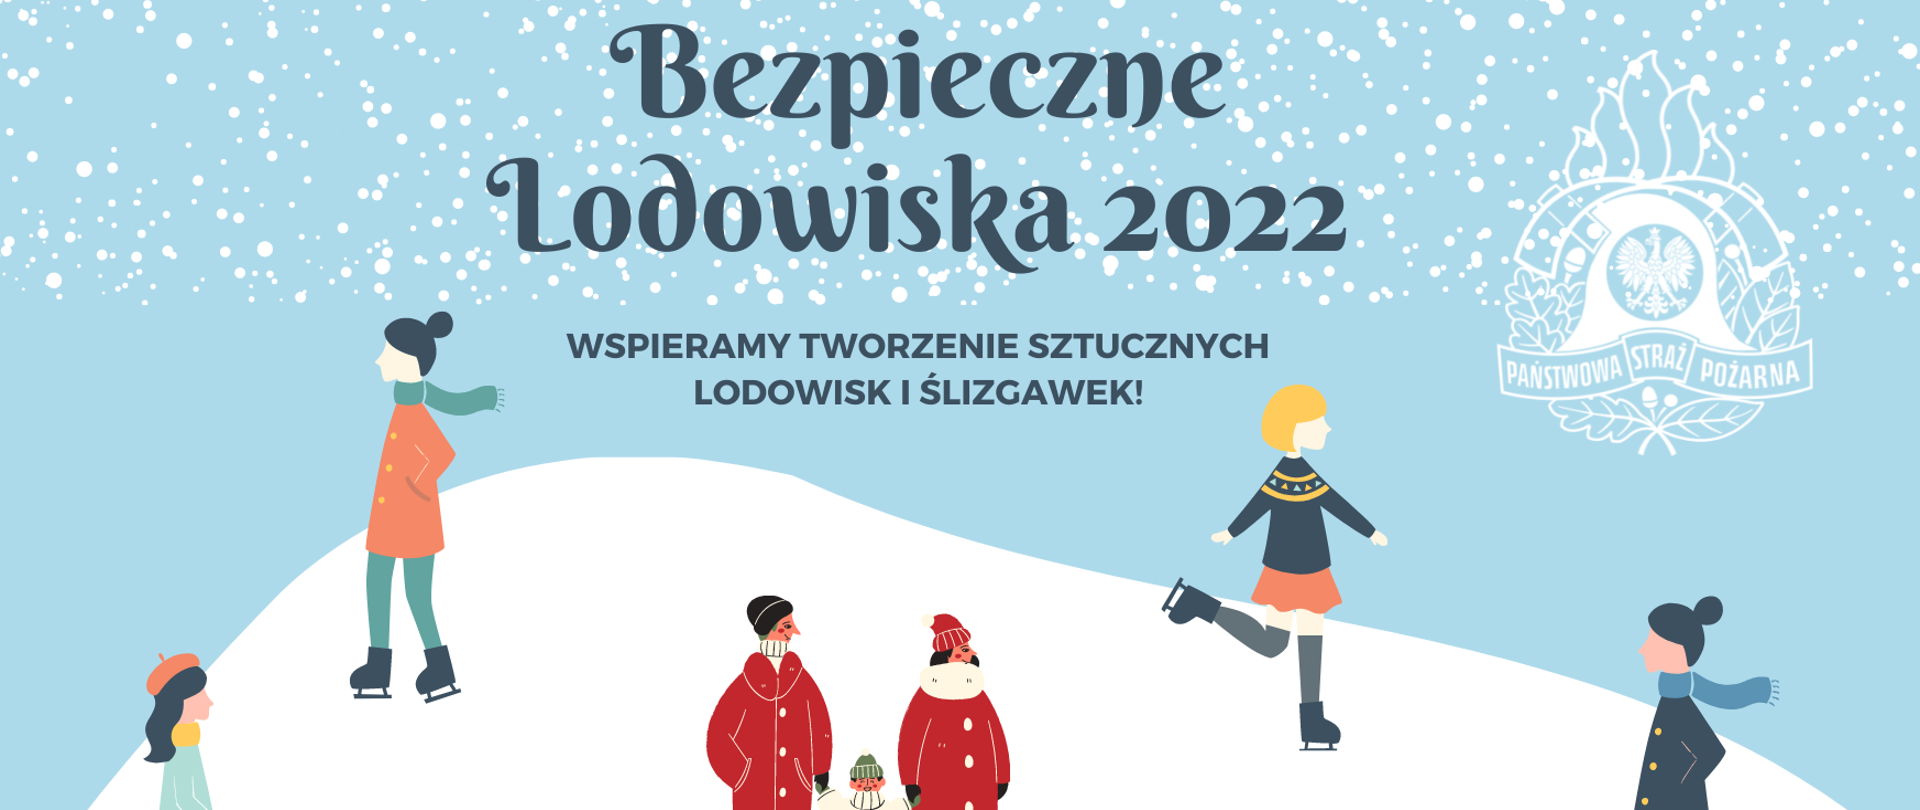 Zdjęcie przedstawia plakat akcji "Bezpieczne Lodowiska 2022". Przedstawione są postacie na łyżwach, oraz rodzina z dzieckiem. W prawym górnym rogu białe logo PSP na tle spadających płatków śniegu.